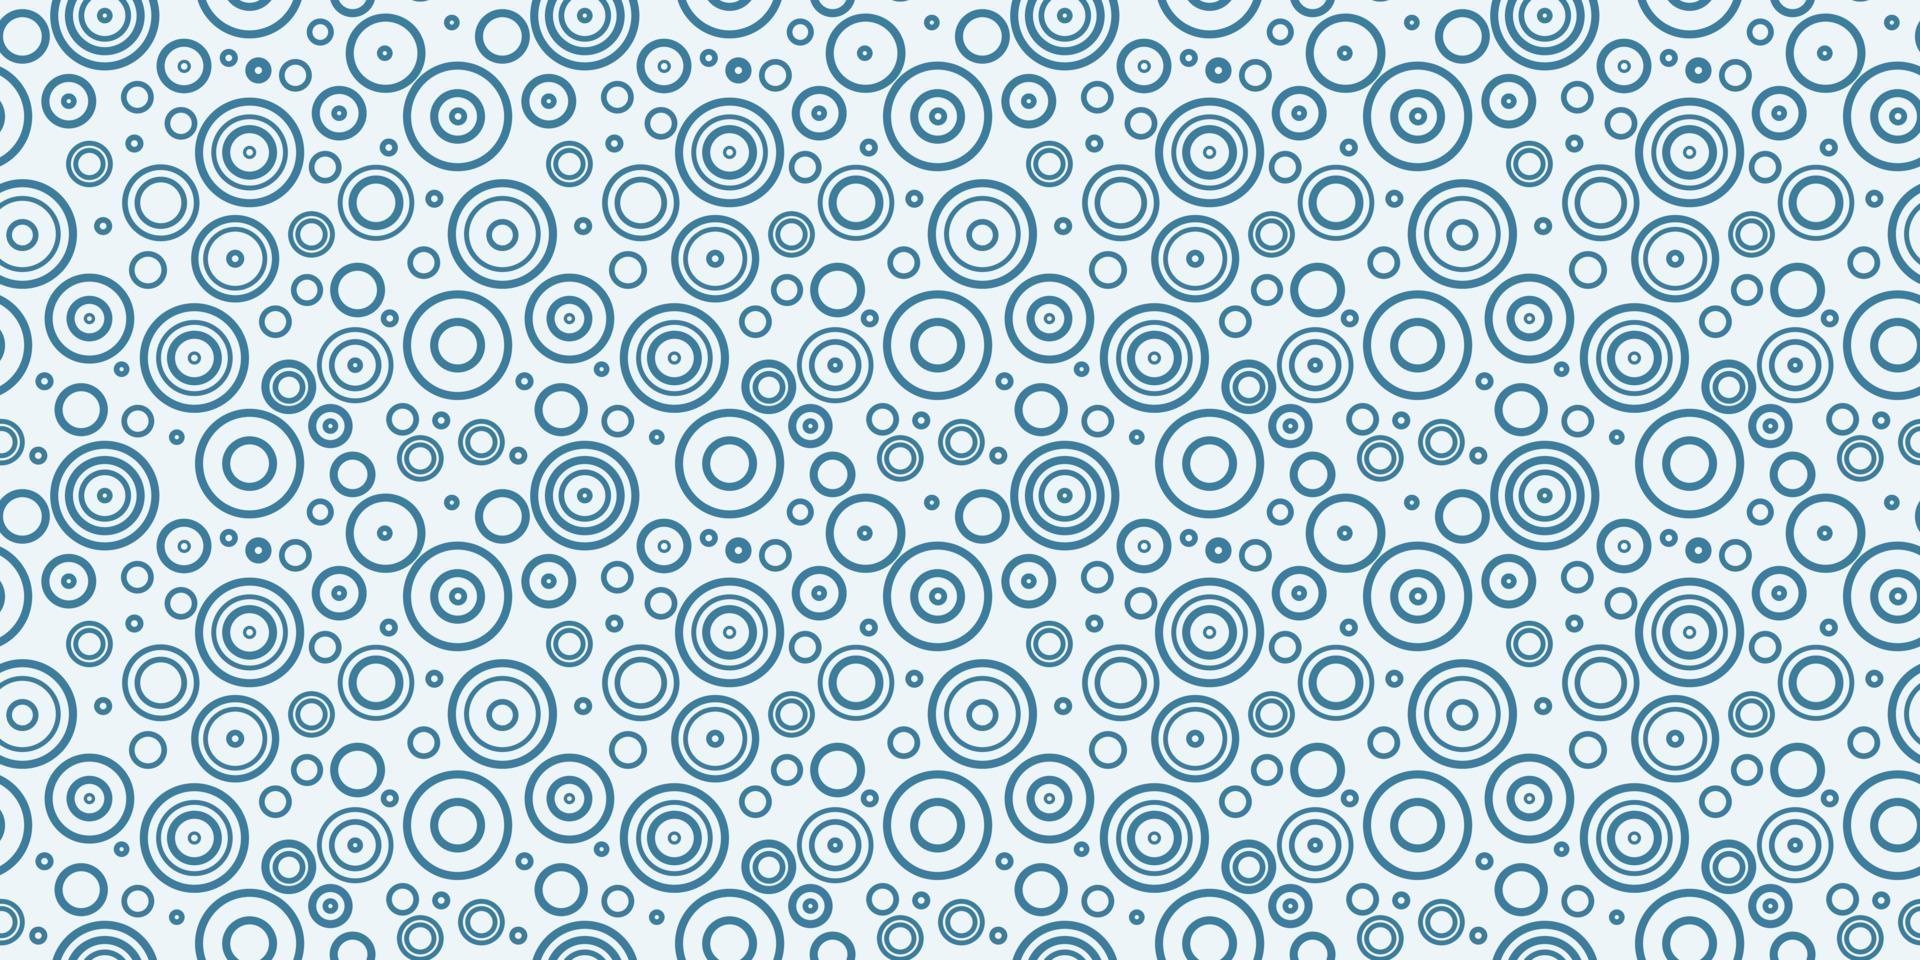 cercles bleus et blancs motif de répétition sans couture vecteur